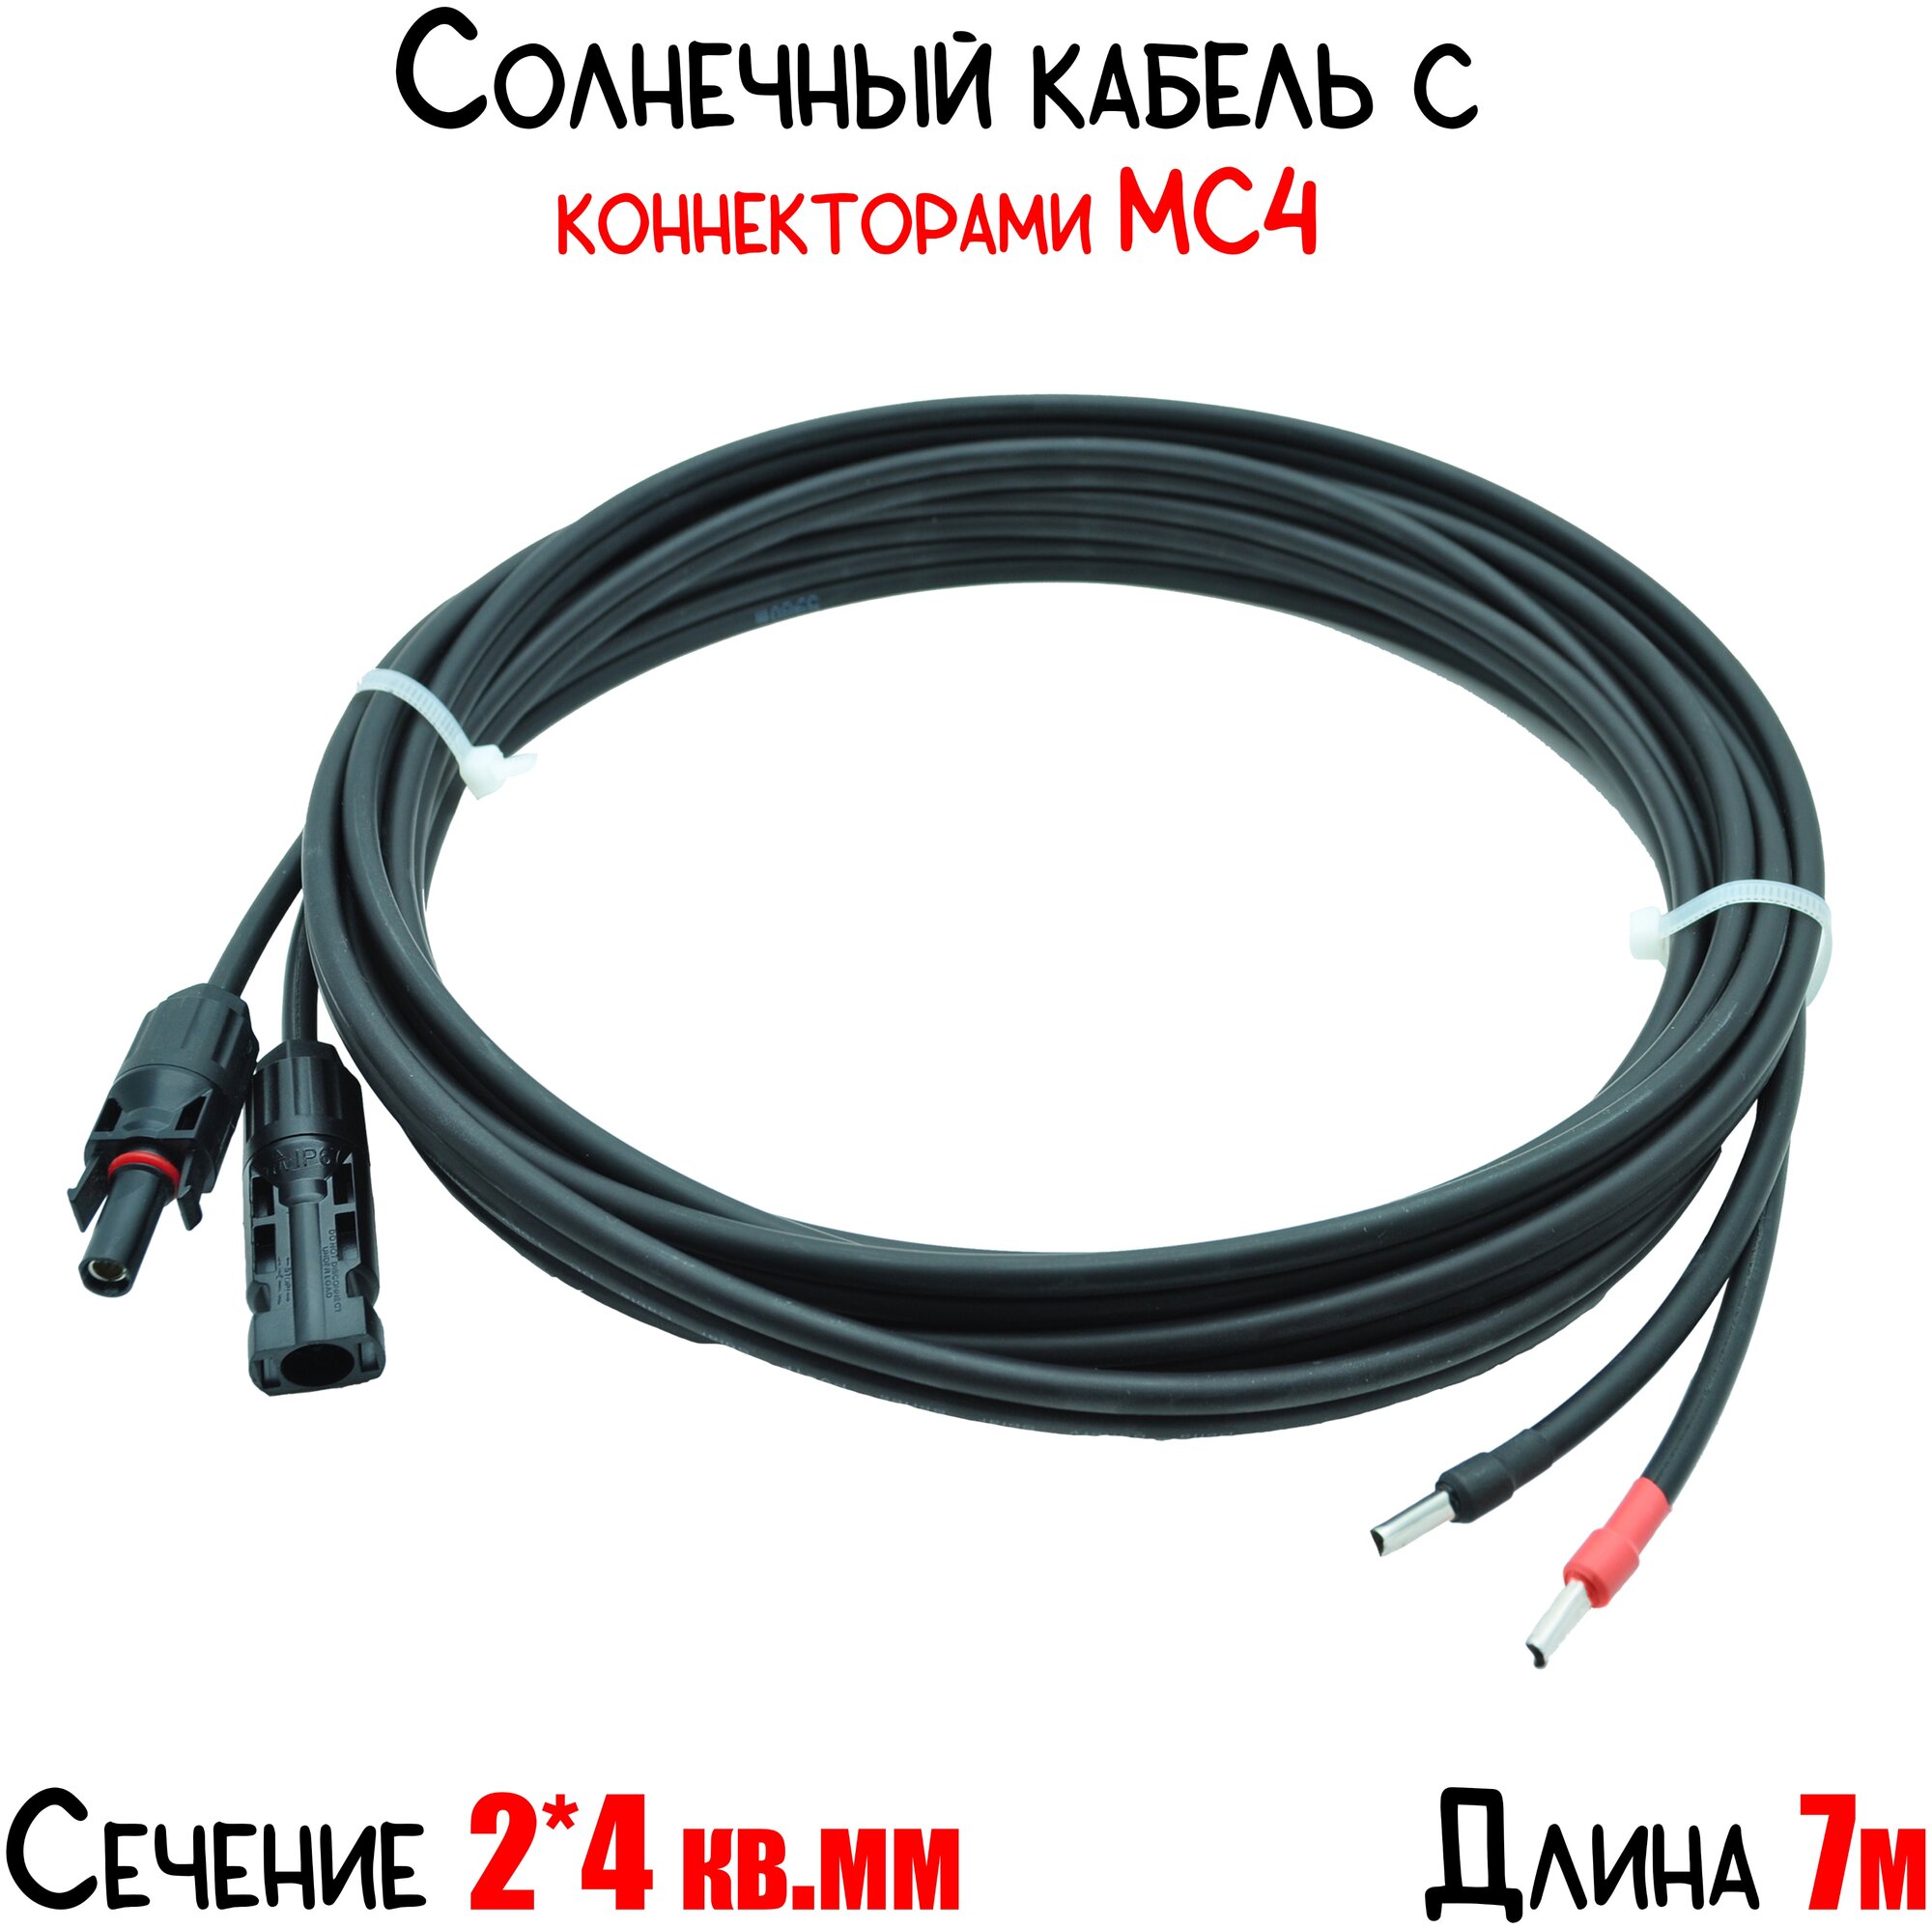 Солнечный кабель двухжильный (+ и -) сечение 4 кв. мм с коннектором МС4, длина 7 метров